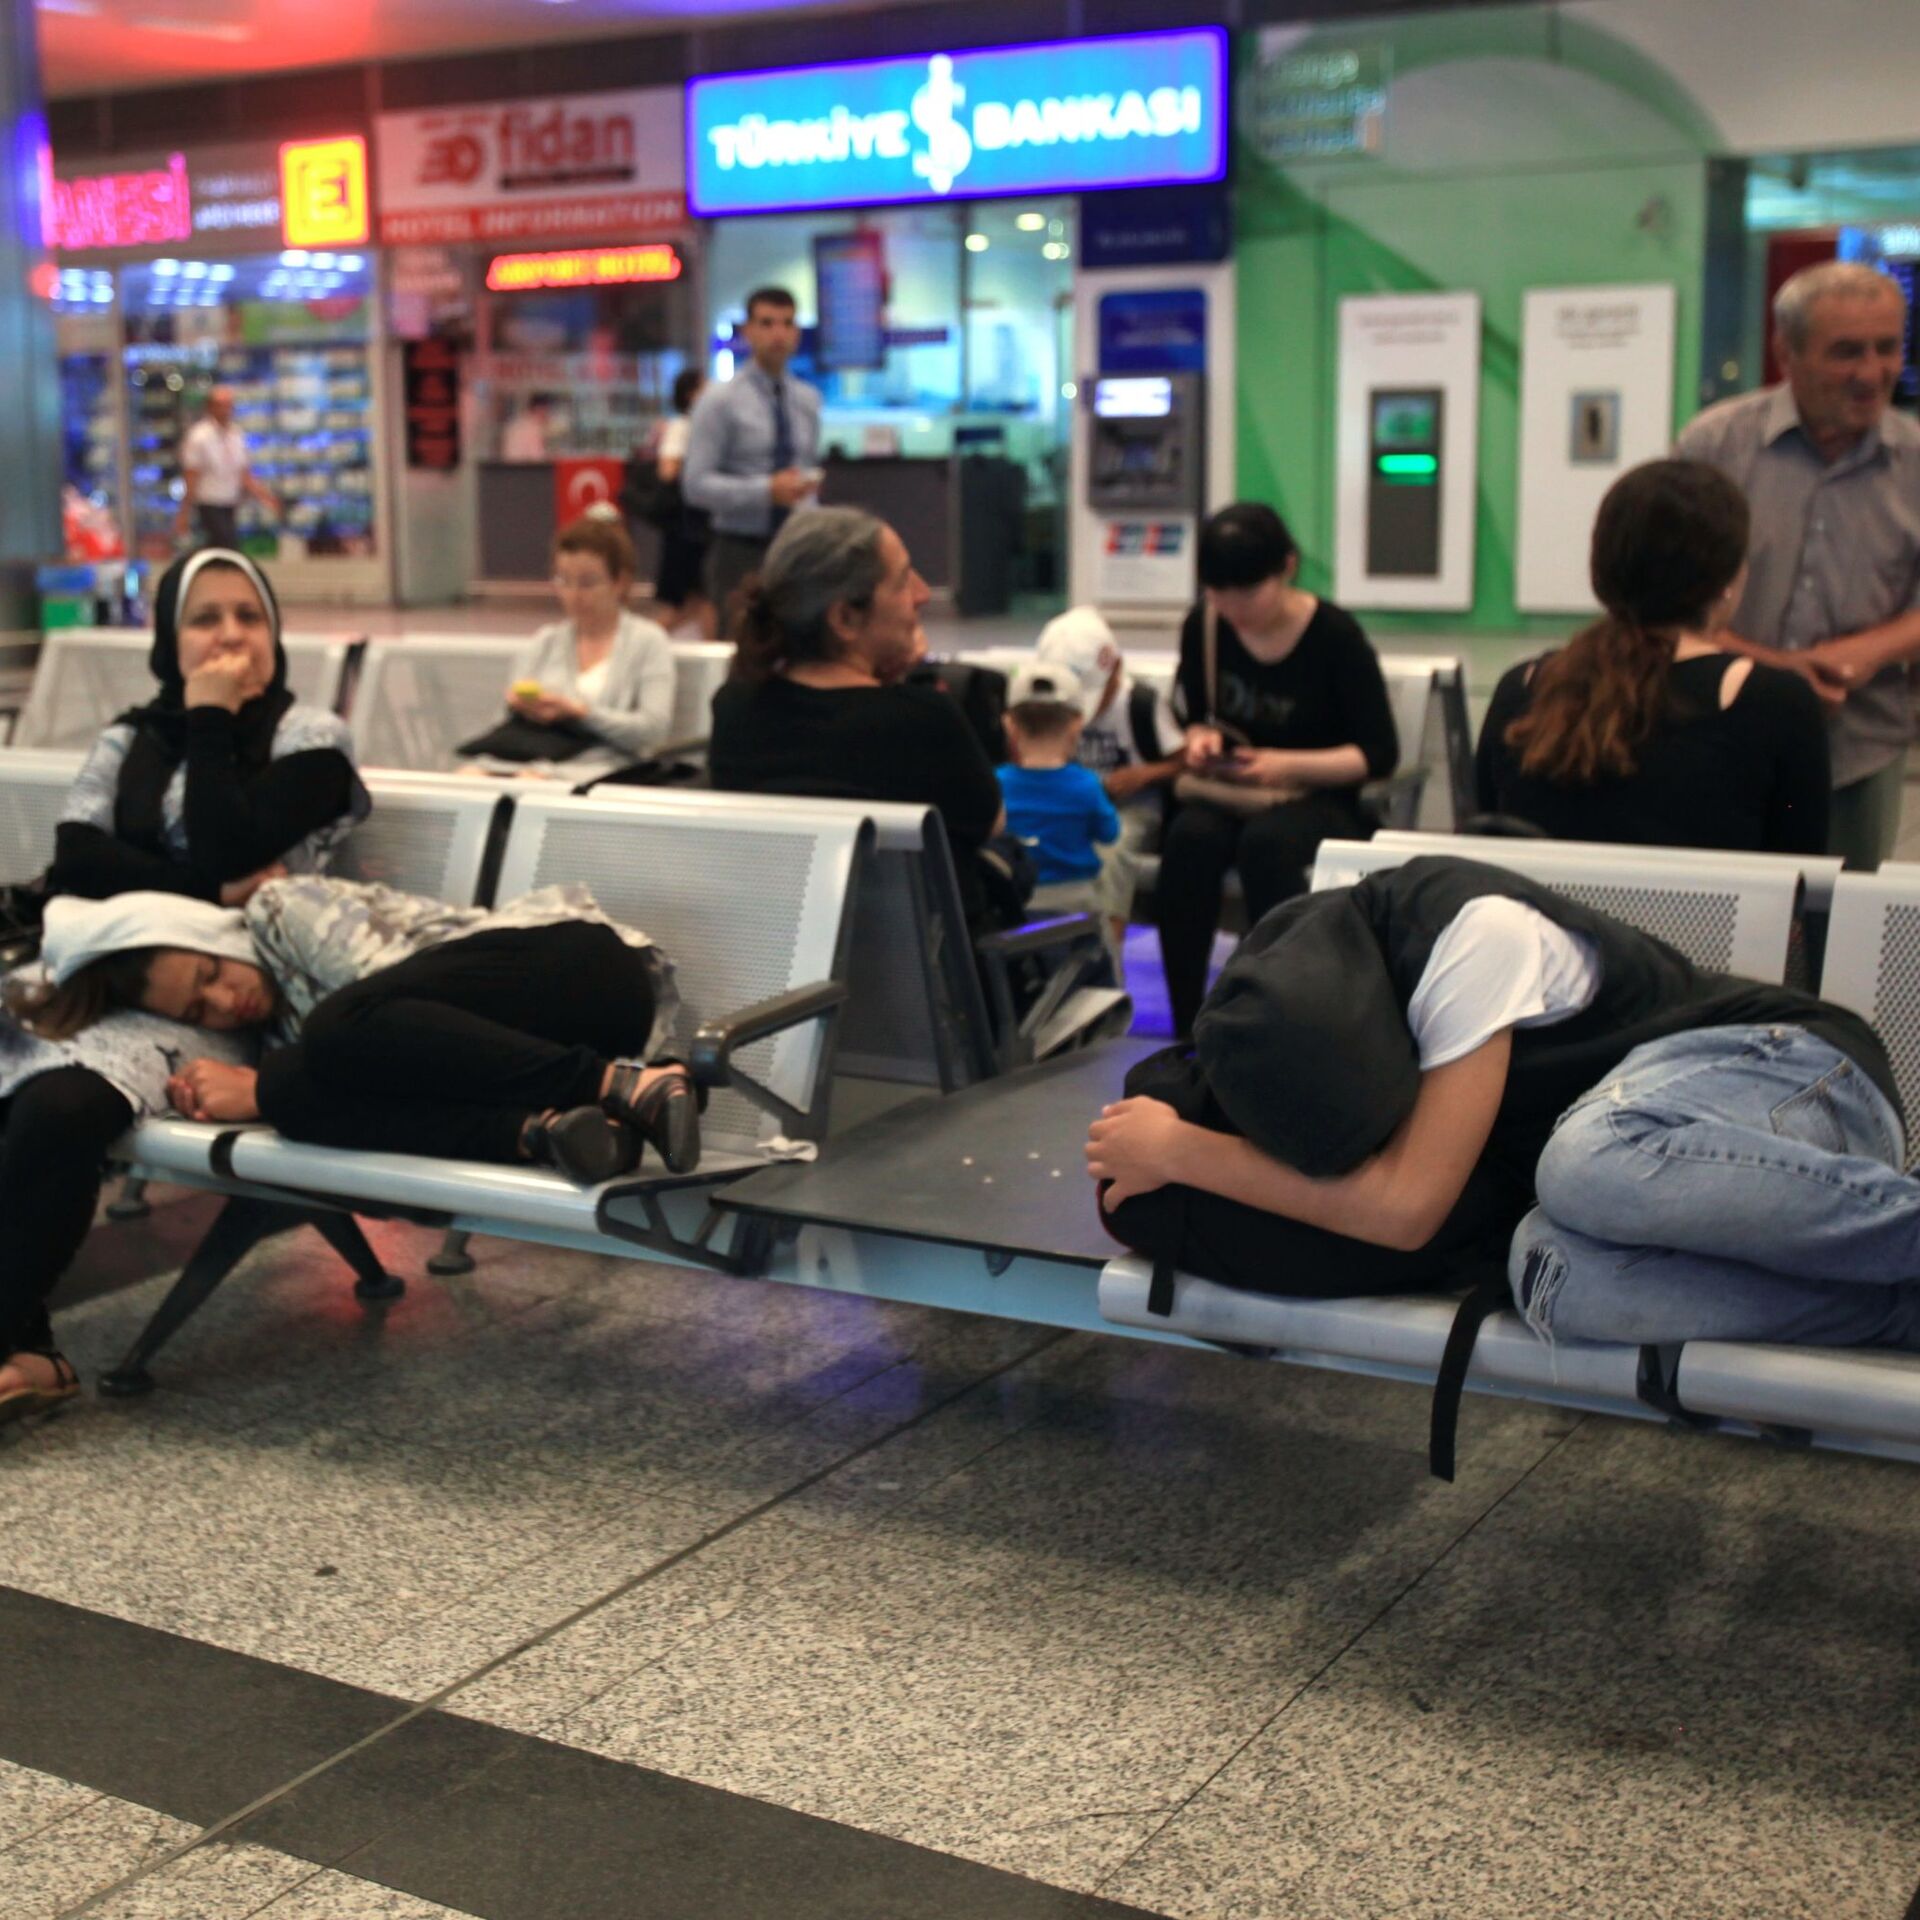 Какая сейчас обстановка в аэропорту. Ситуация в стамбульском аэропорту. Ситуации в аэропорту. Обстановка в аэропорту Стамбула. Ожидание в аэропорту в Стамбуле бизнес.